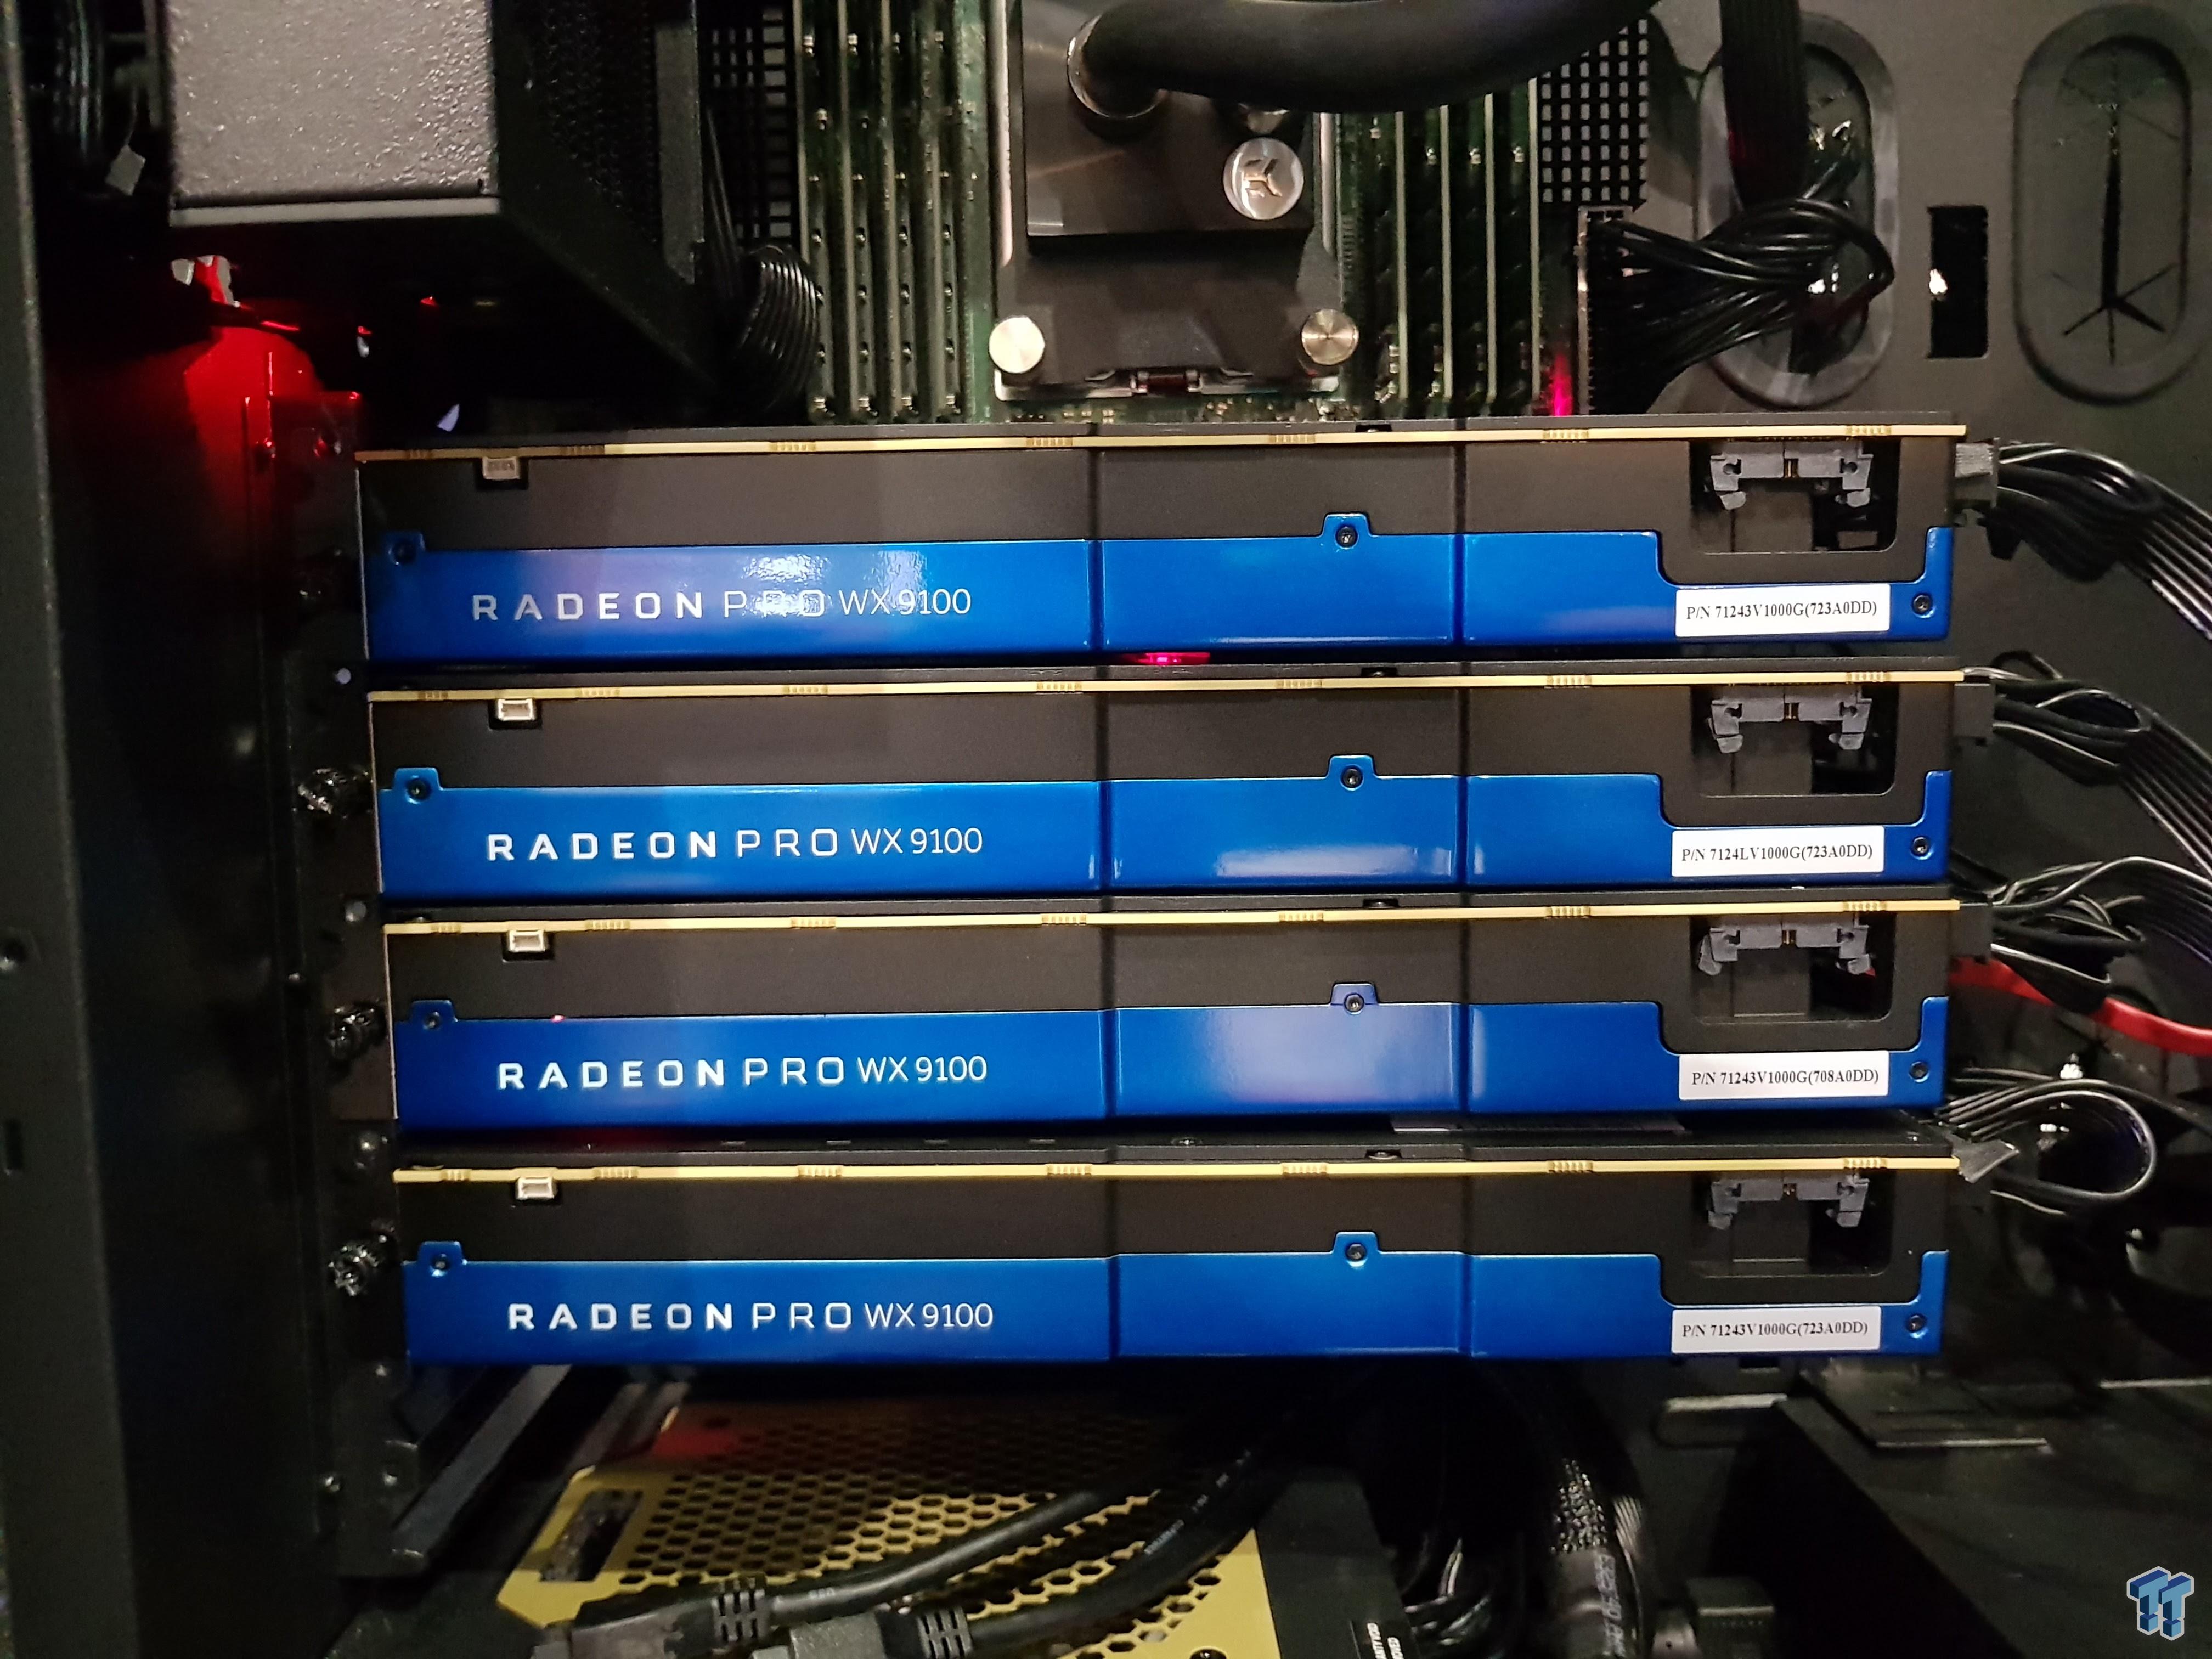 4 x AMD Radeon Pro WX 9100s require 2 x 